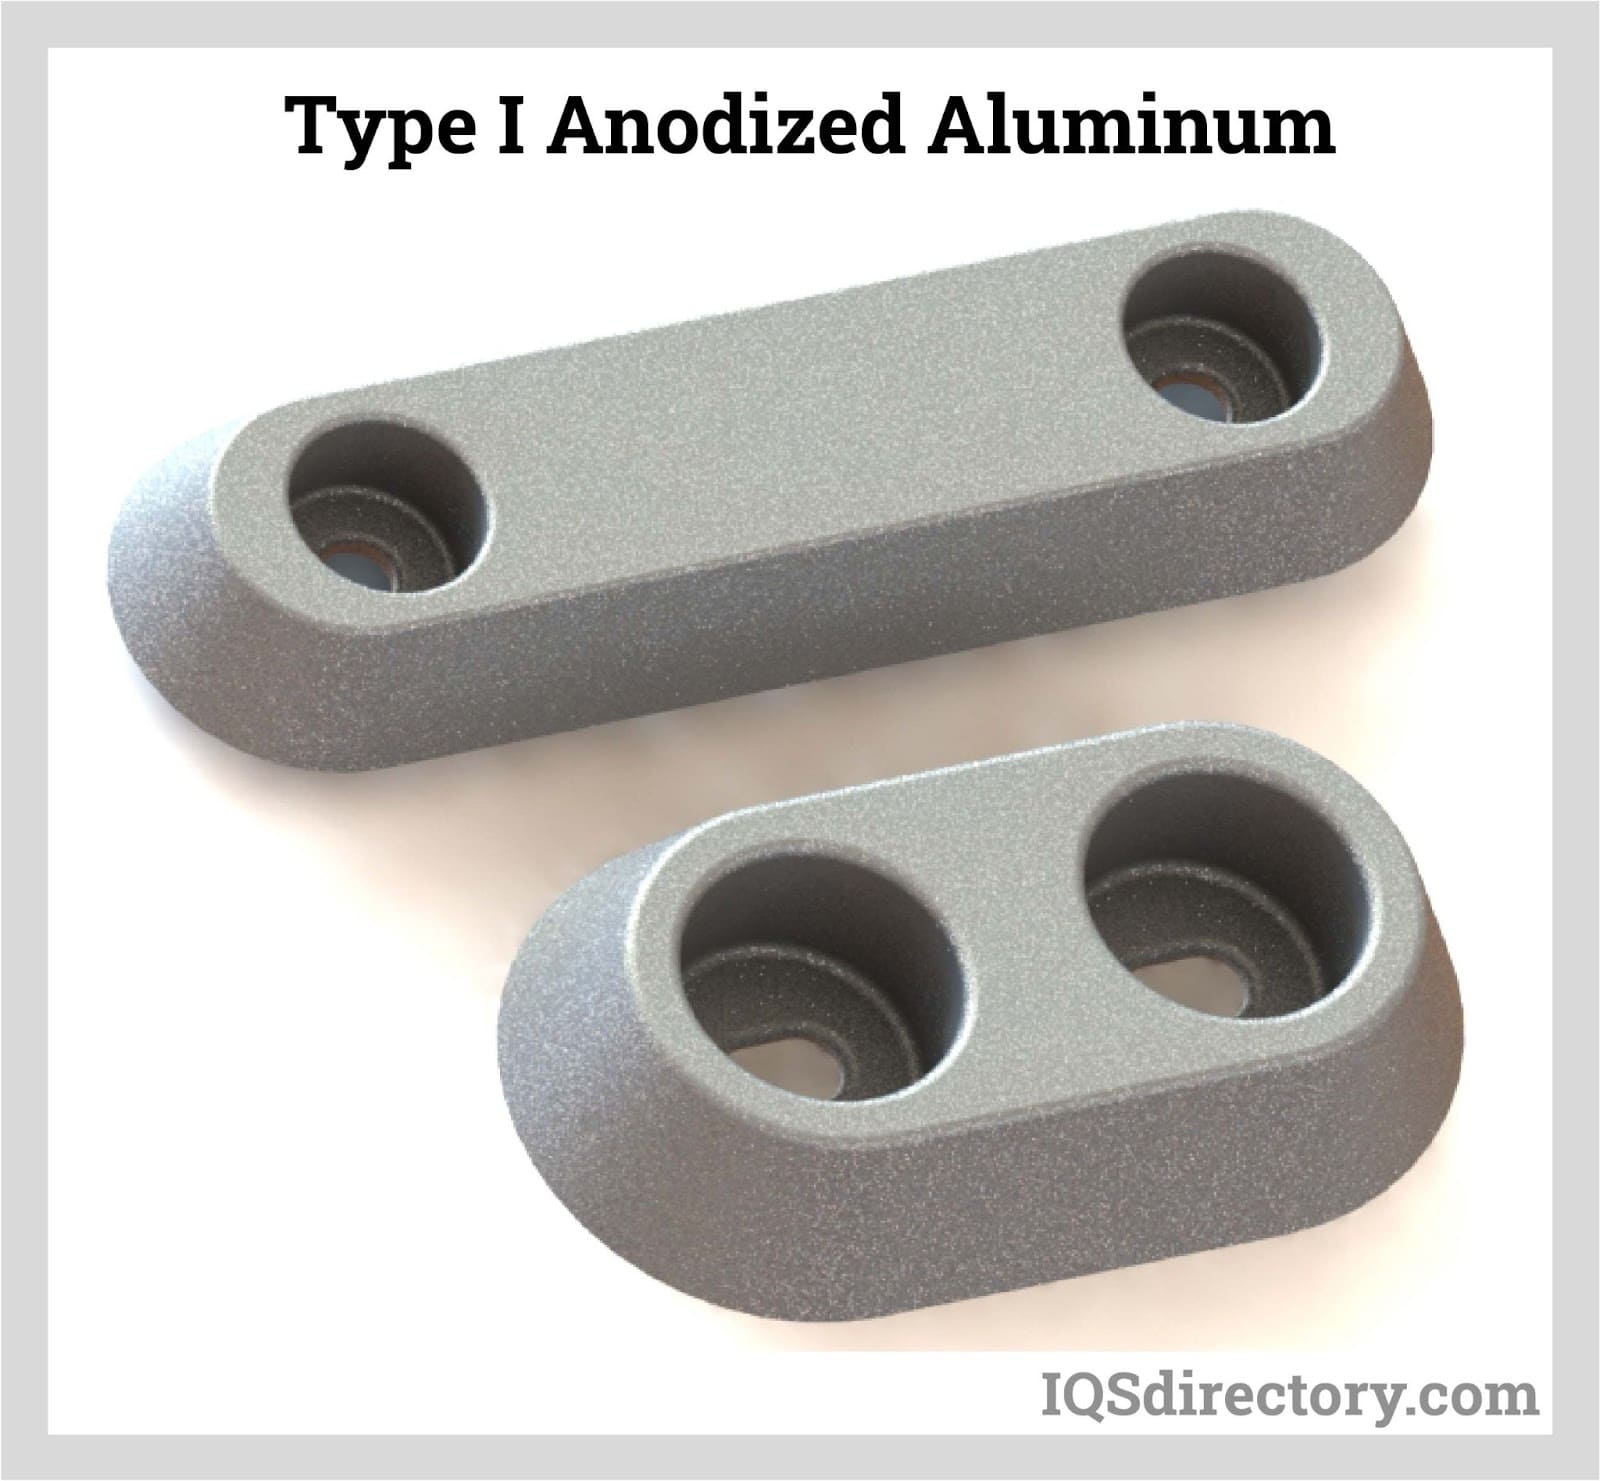 Type I Anodized Aluminum